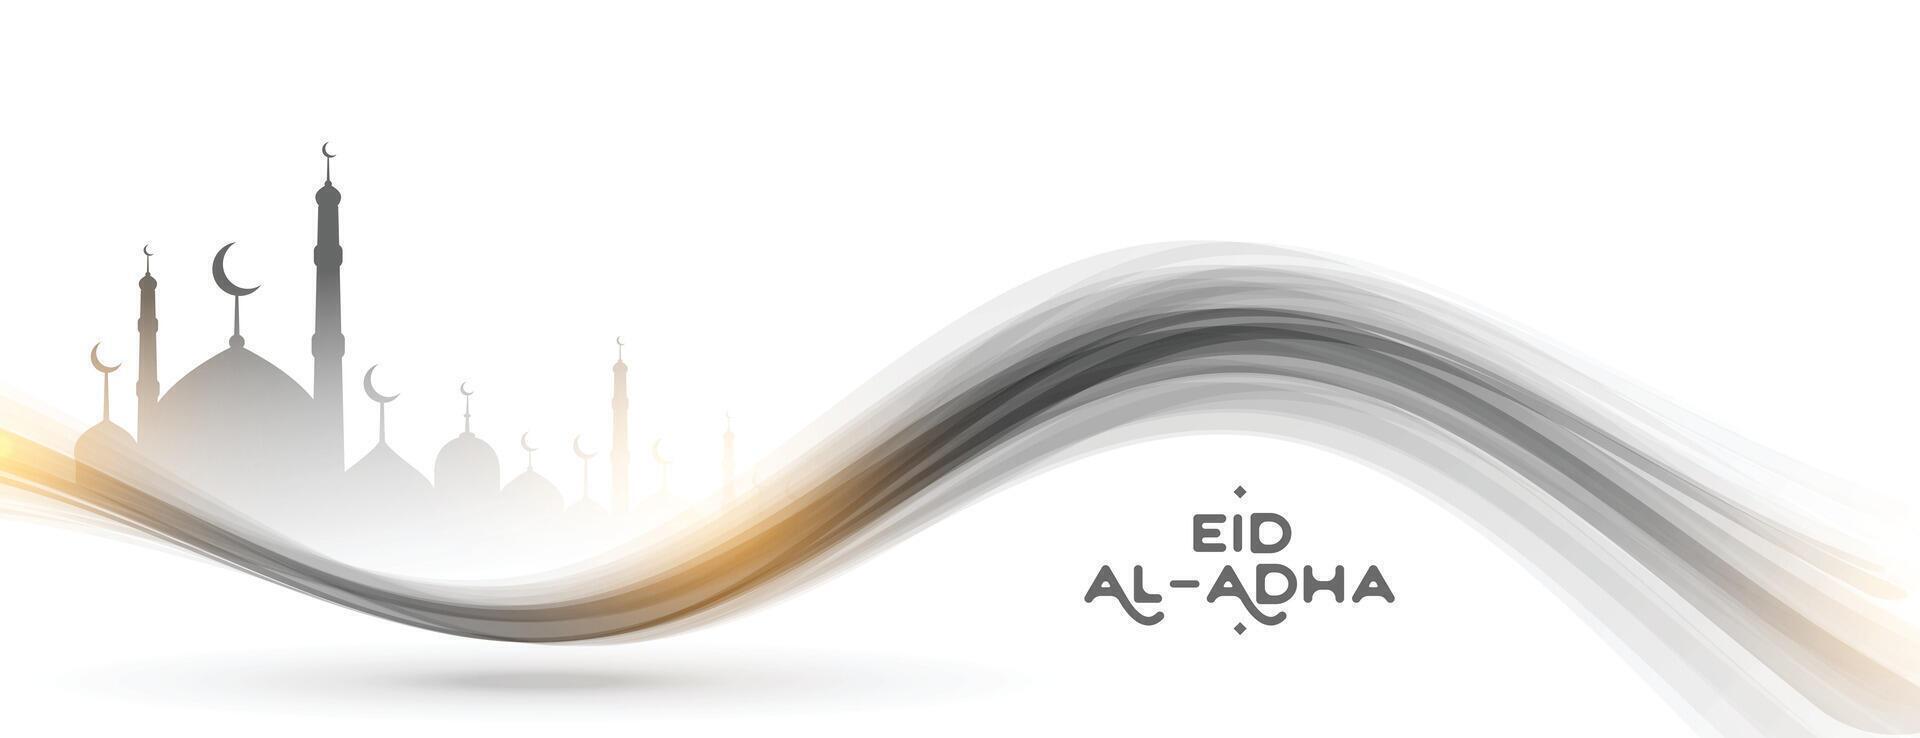 eid Al adha mubarak islamique Festival mosquée silhouette bannière vecteur